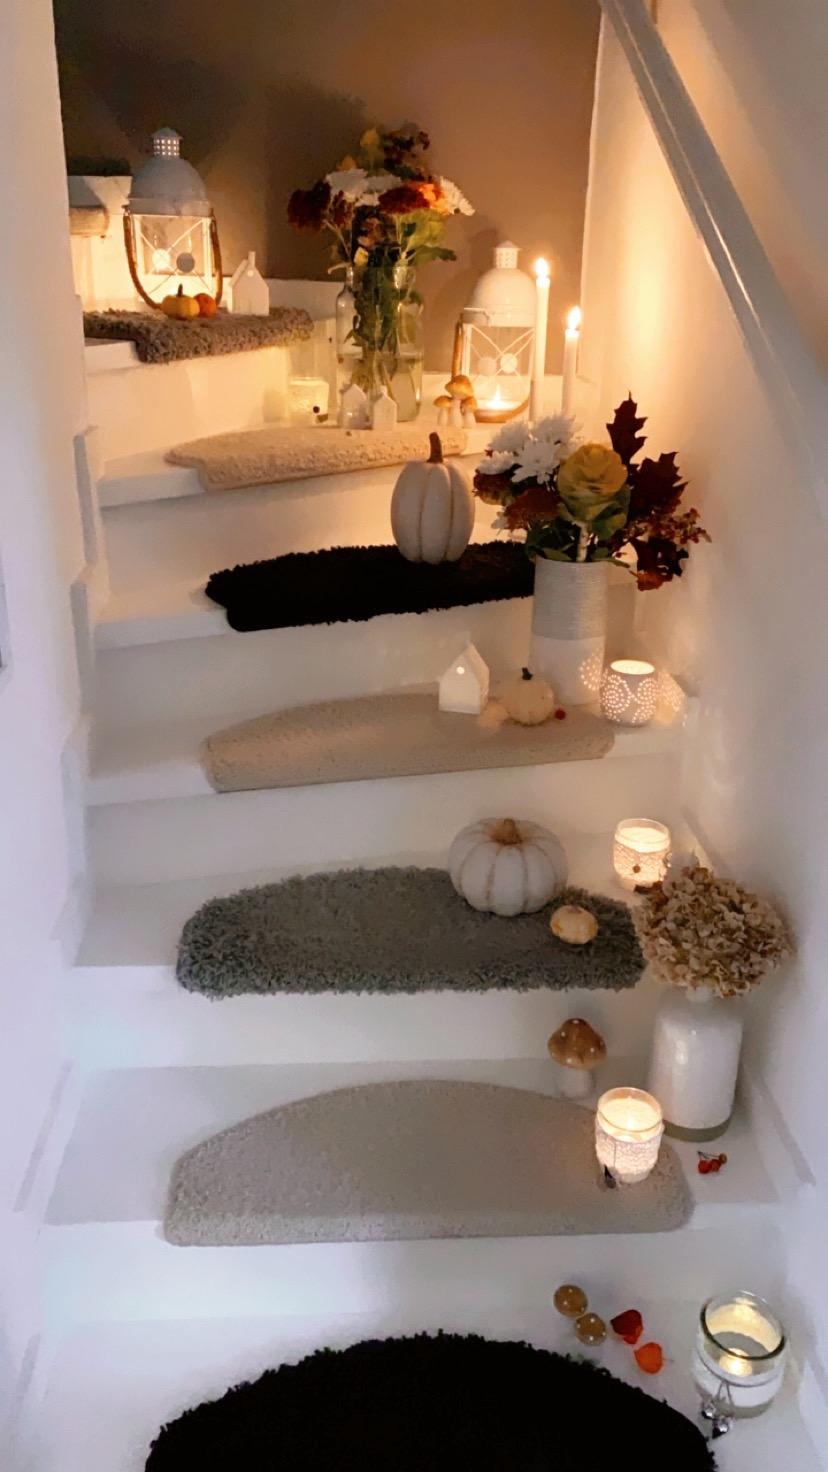 Mein Dekotraum unser herbstlicher Treppenaufgang 😍🍁🍃 #dekoration #herbst #kerzenlicht #blumen